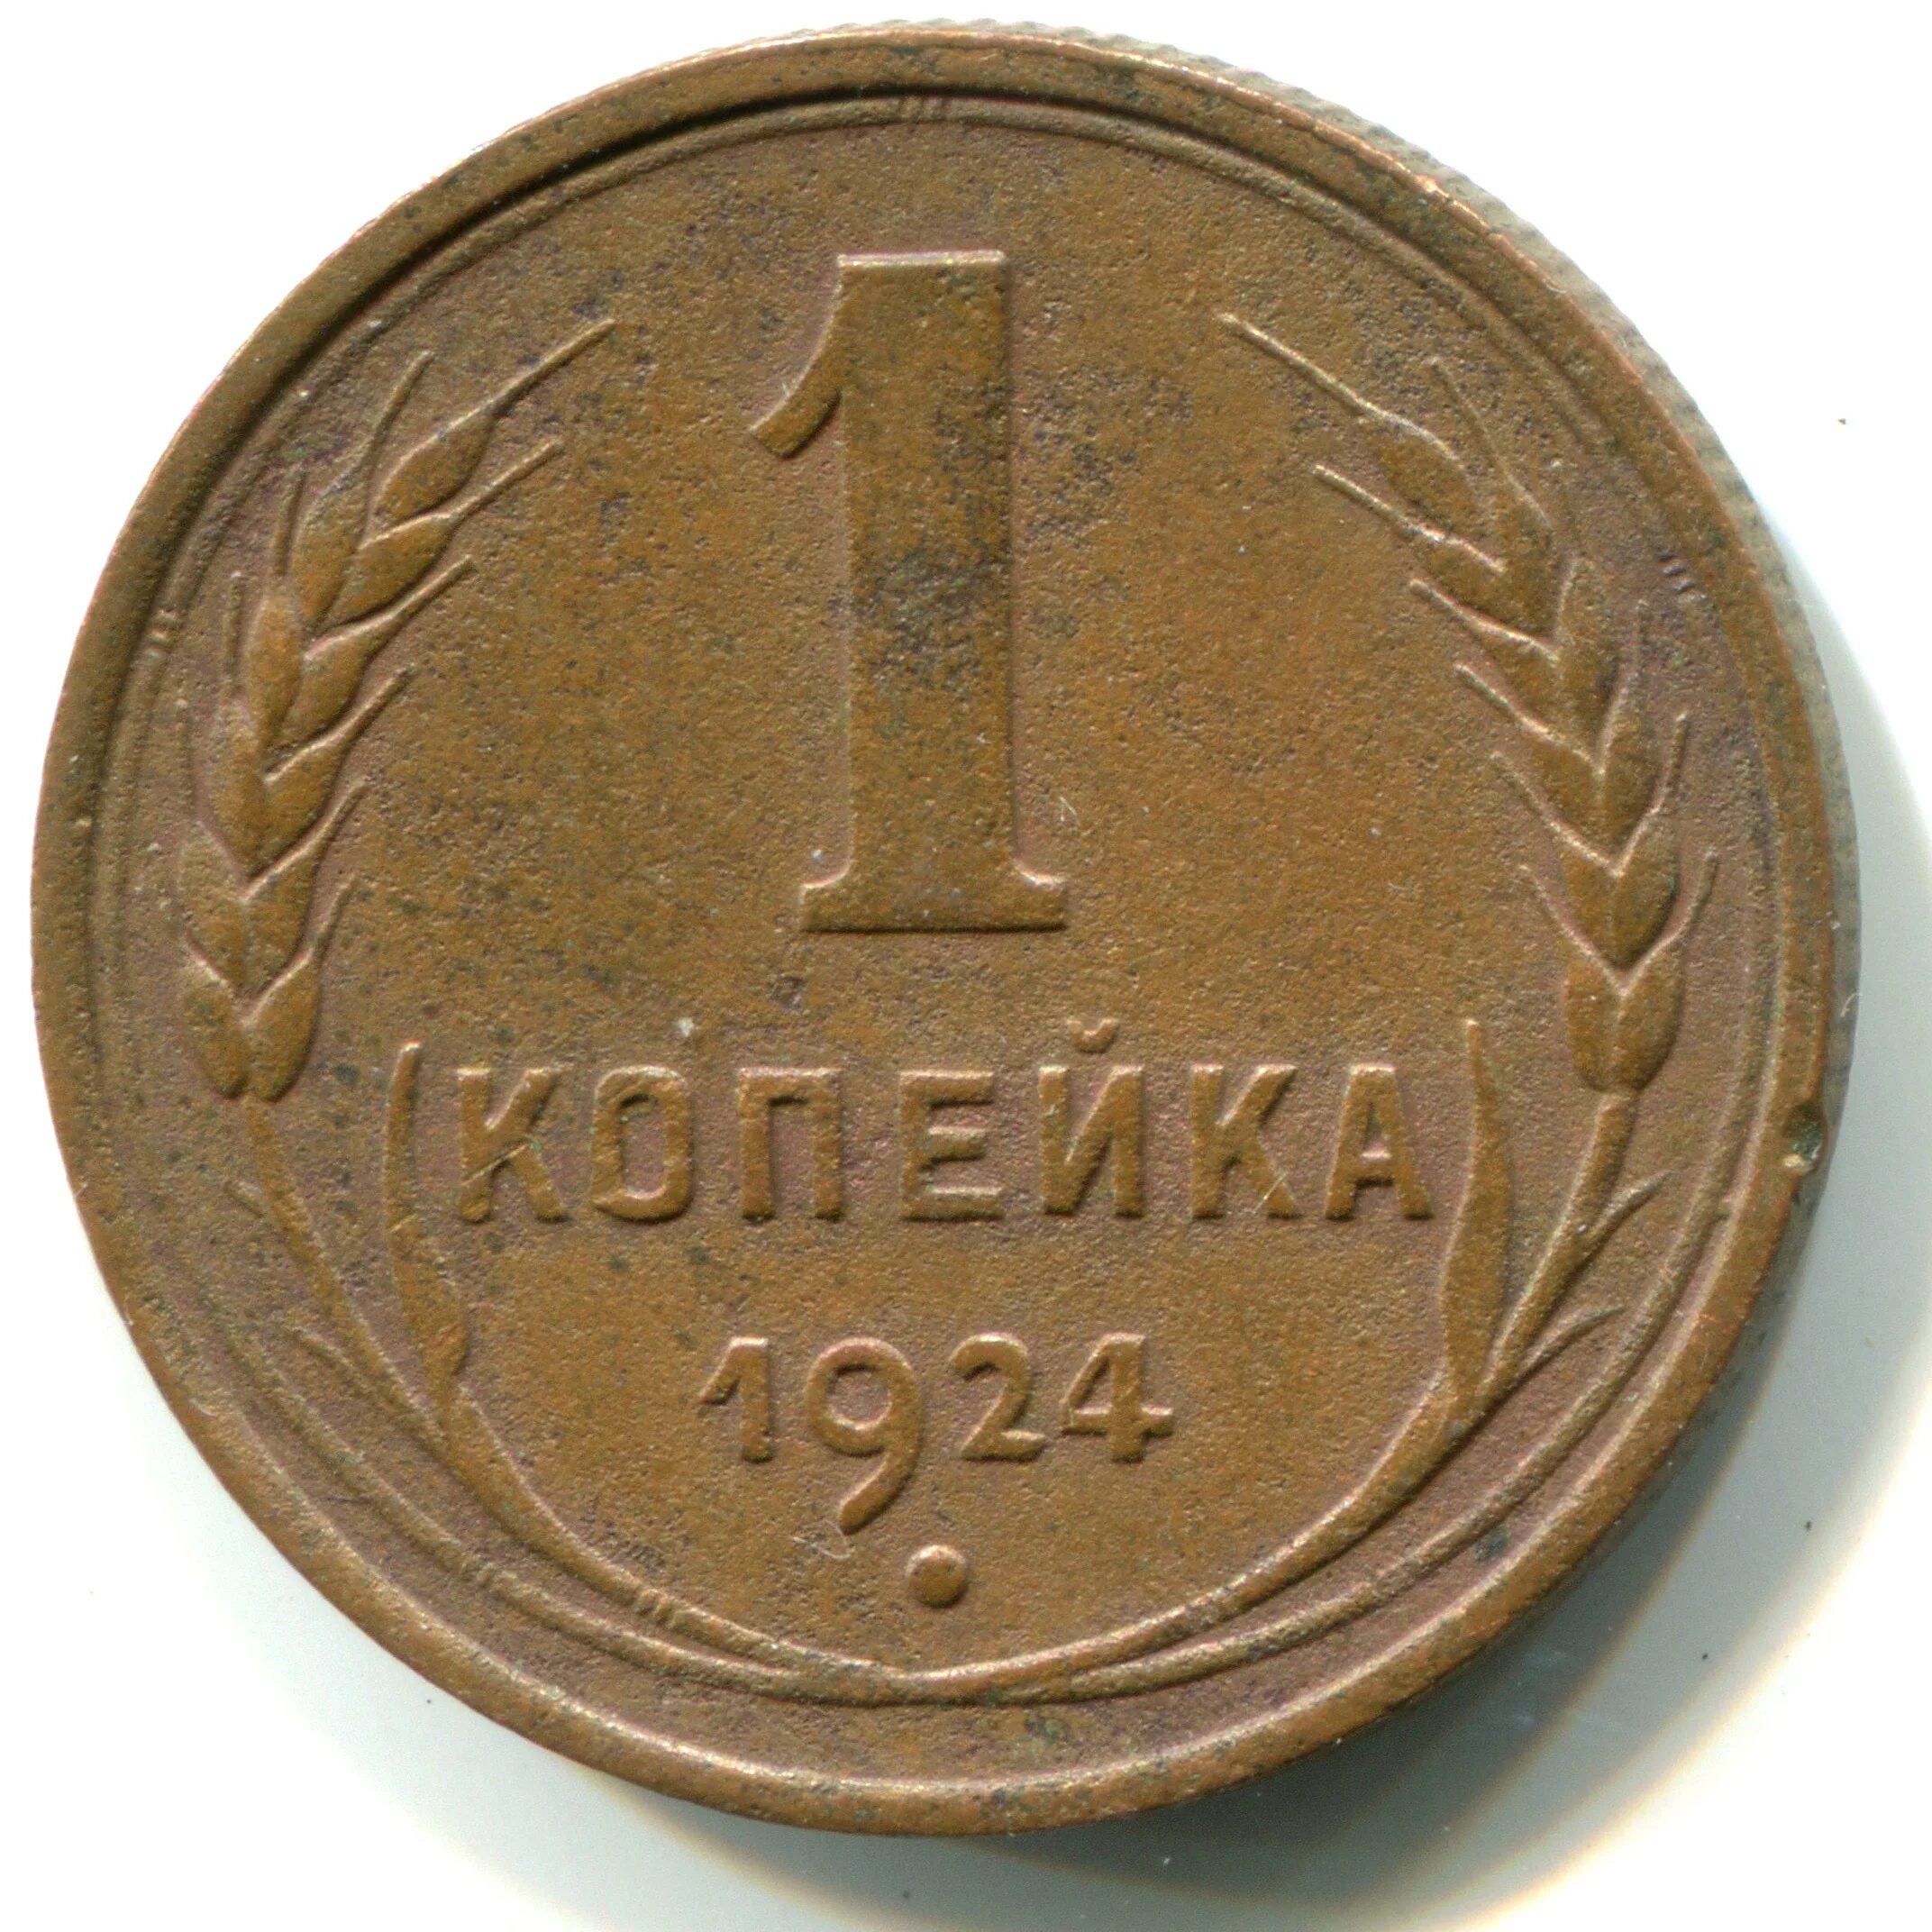 1 к 1924 г. 1 Копейка 1924. 1 Копейка 1924 медная. Советская монета 1 копейка 1924 года. 2 Копейки 1924.